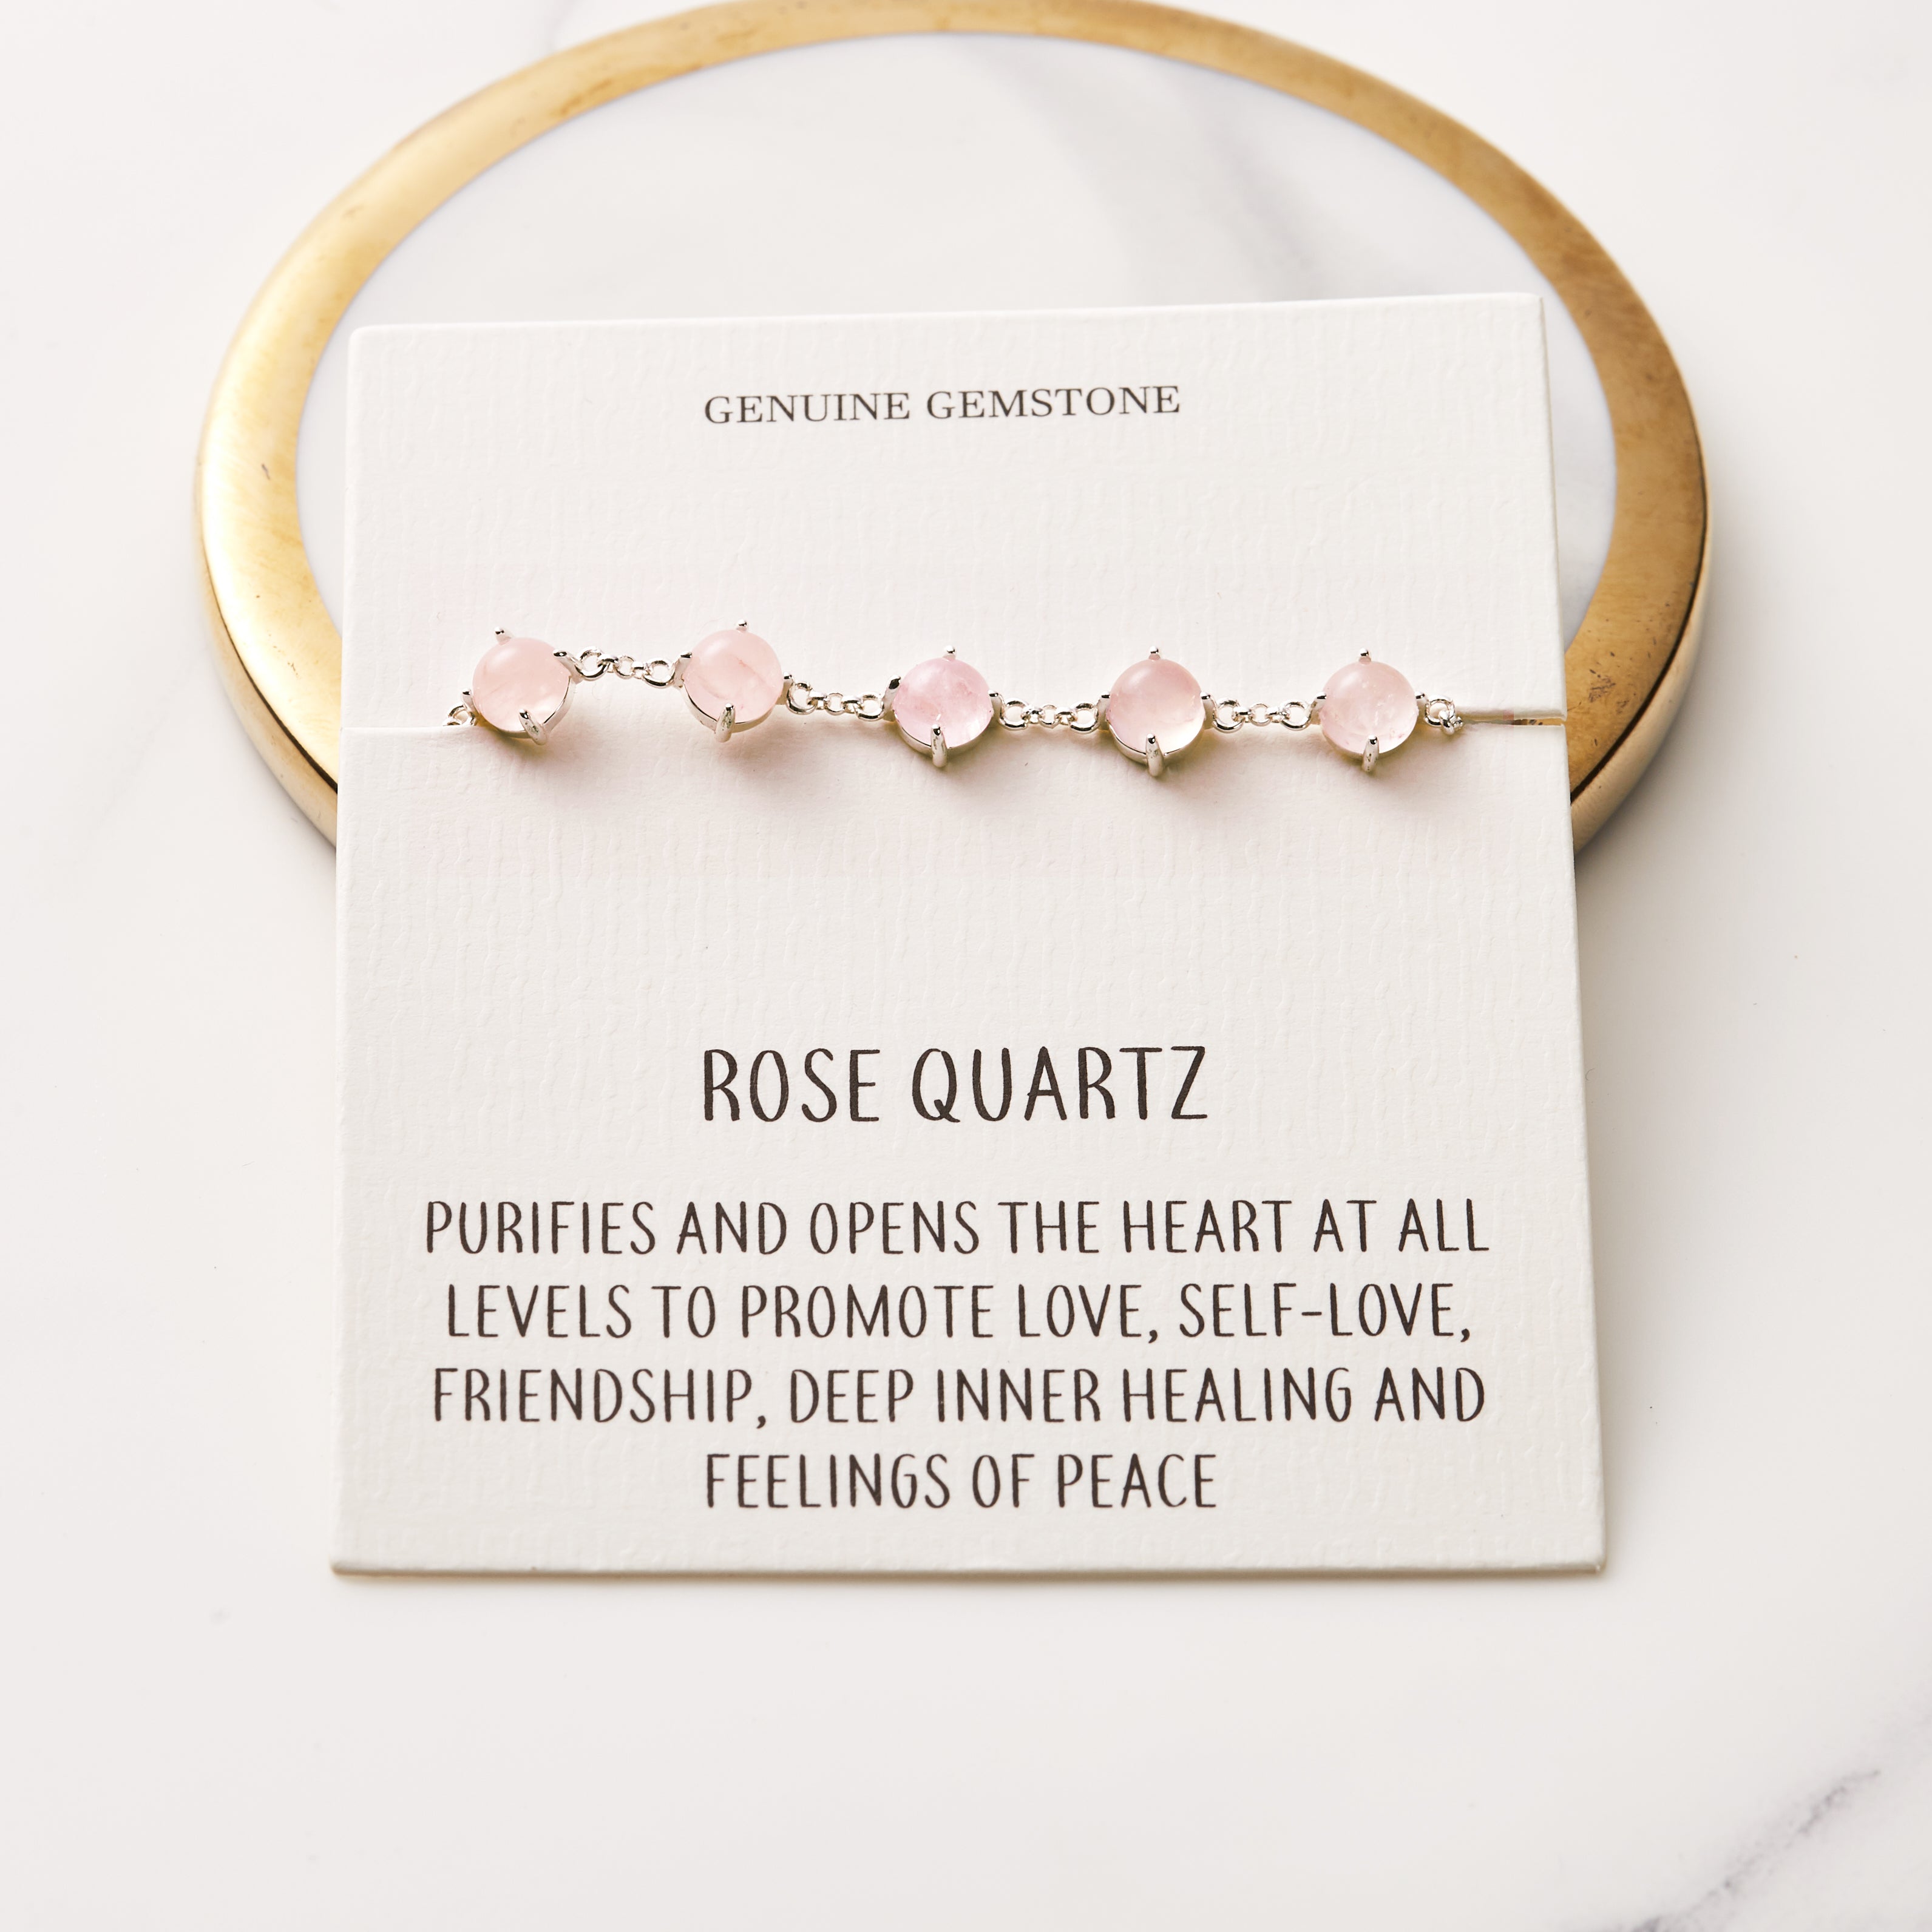 Rose Quartz Gemstone Bracelet with Quote Card